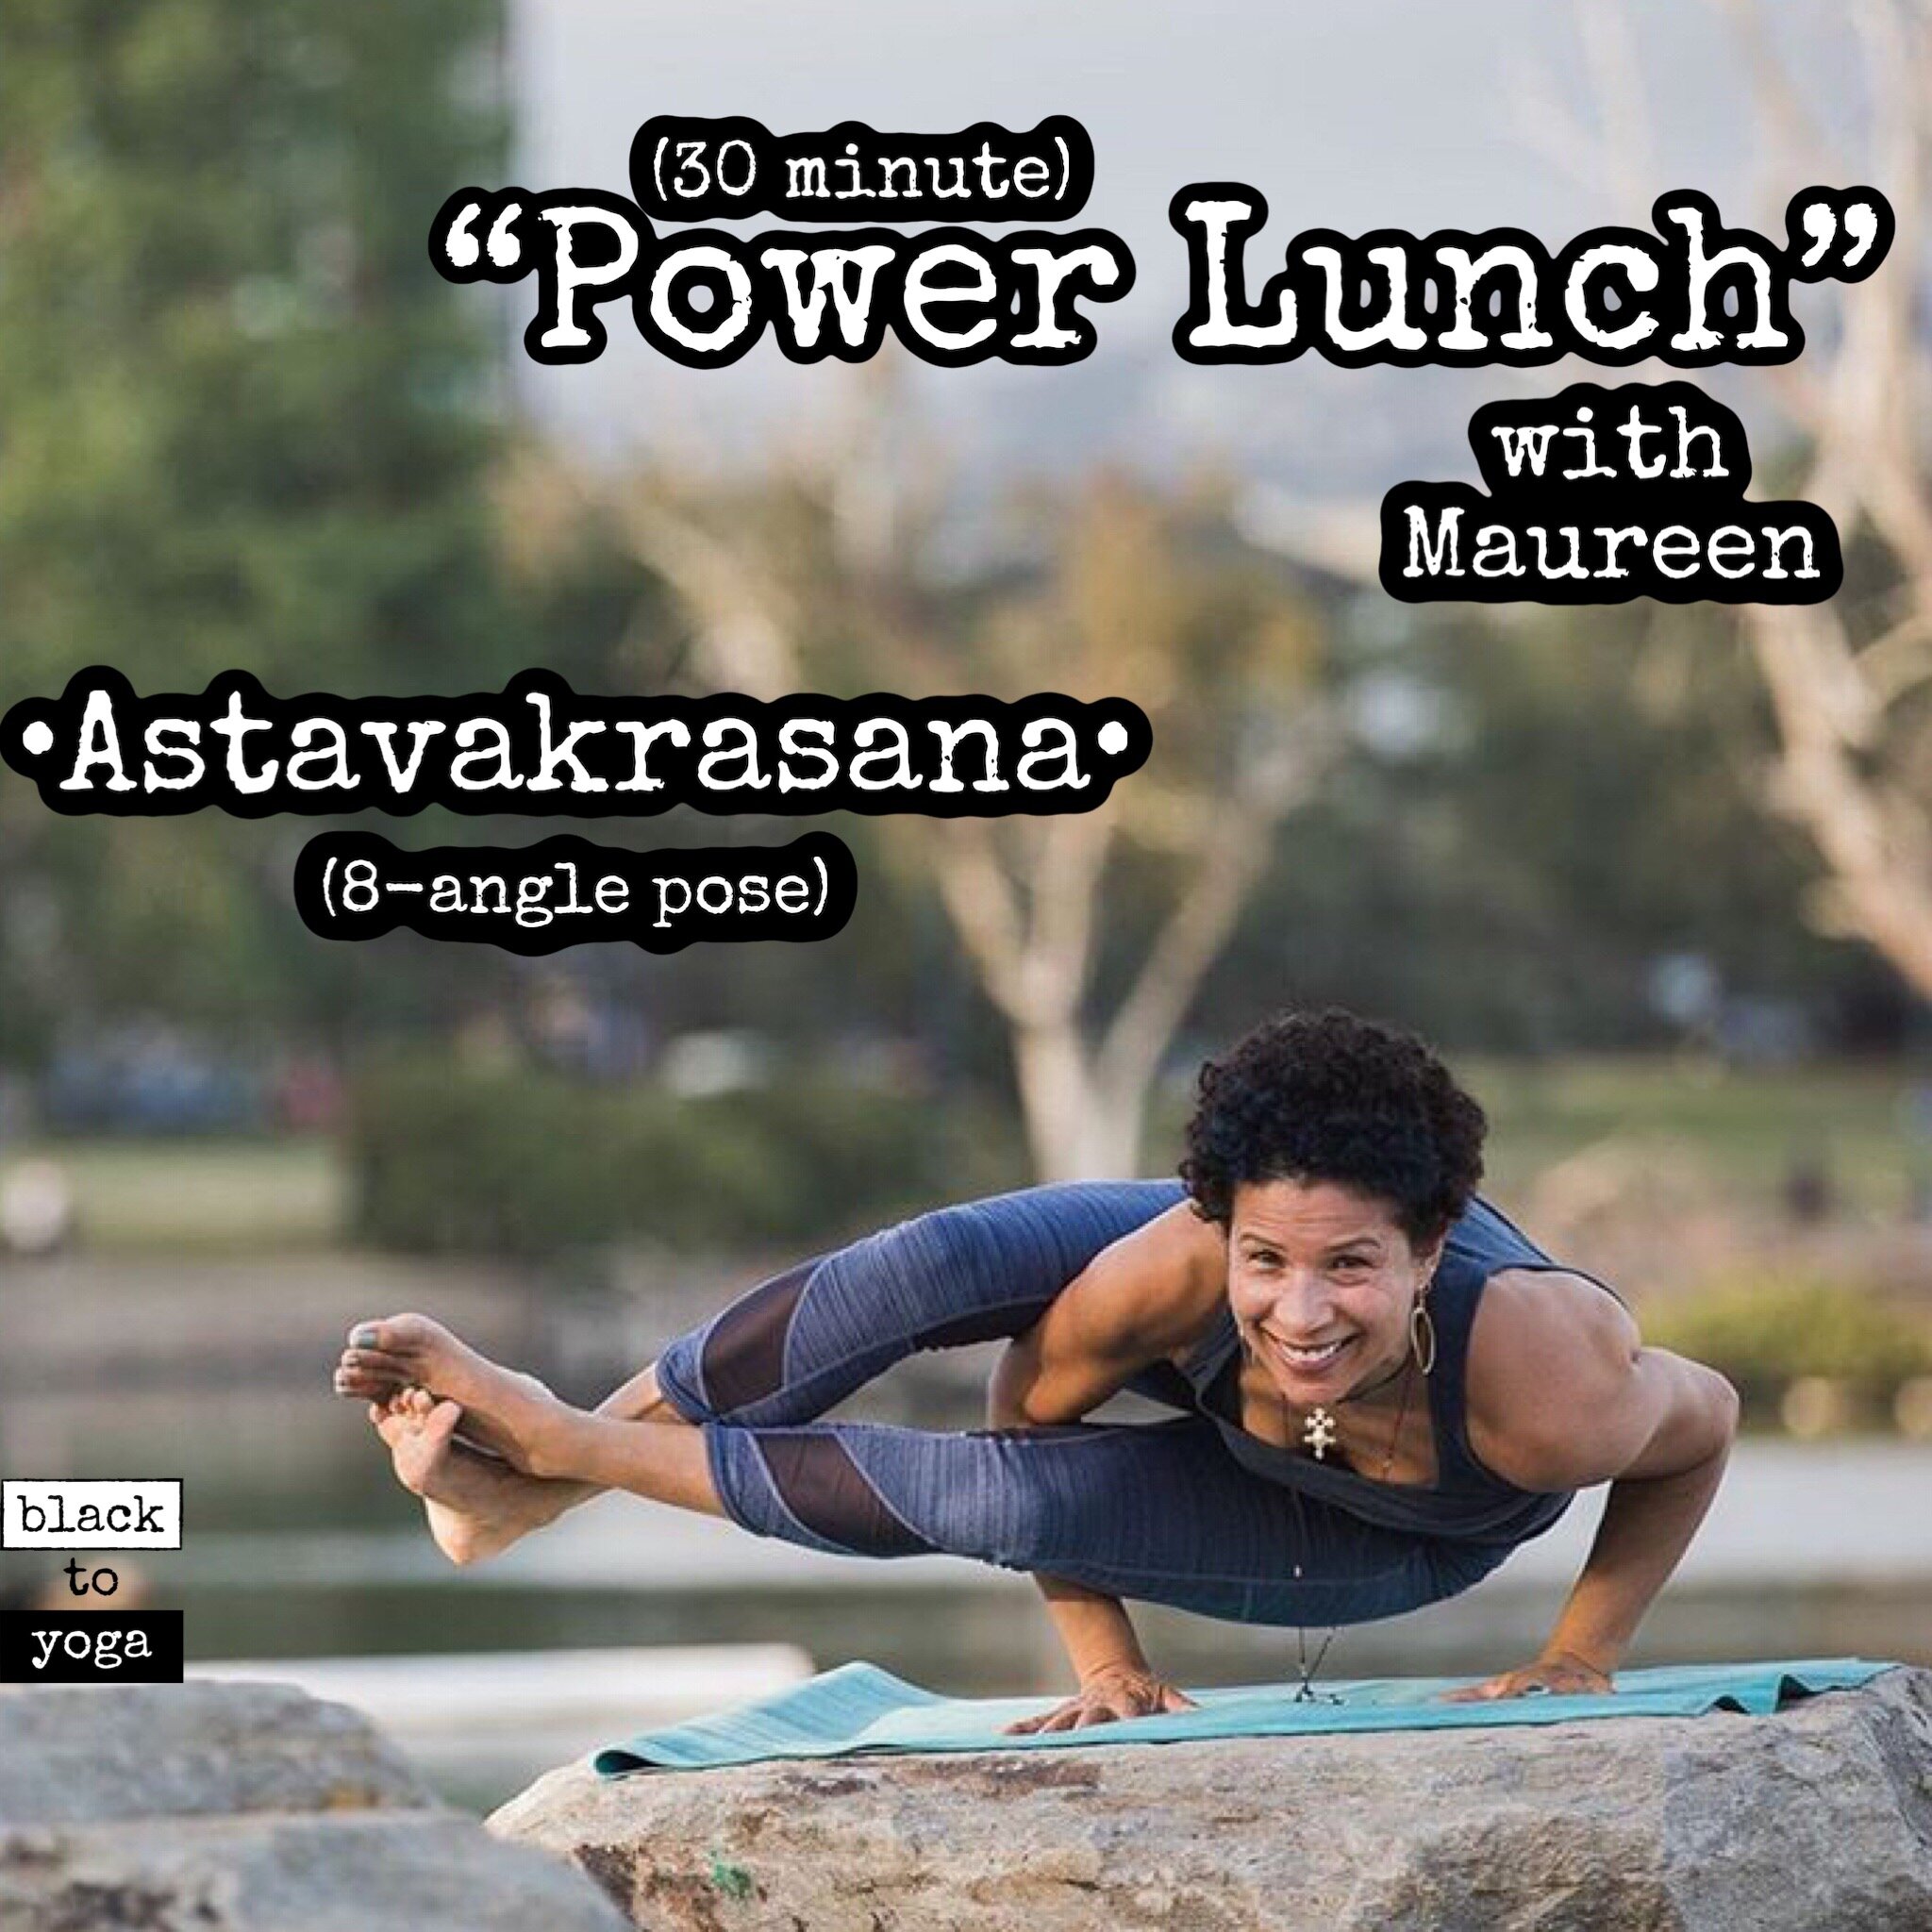 Power Lunch: Astavakrasana w/ Maureen -30 minutes